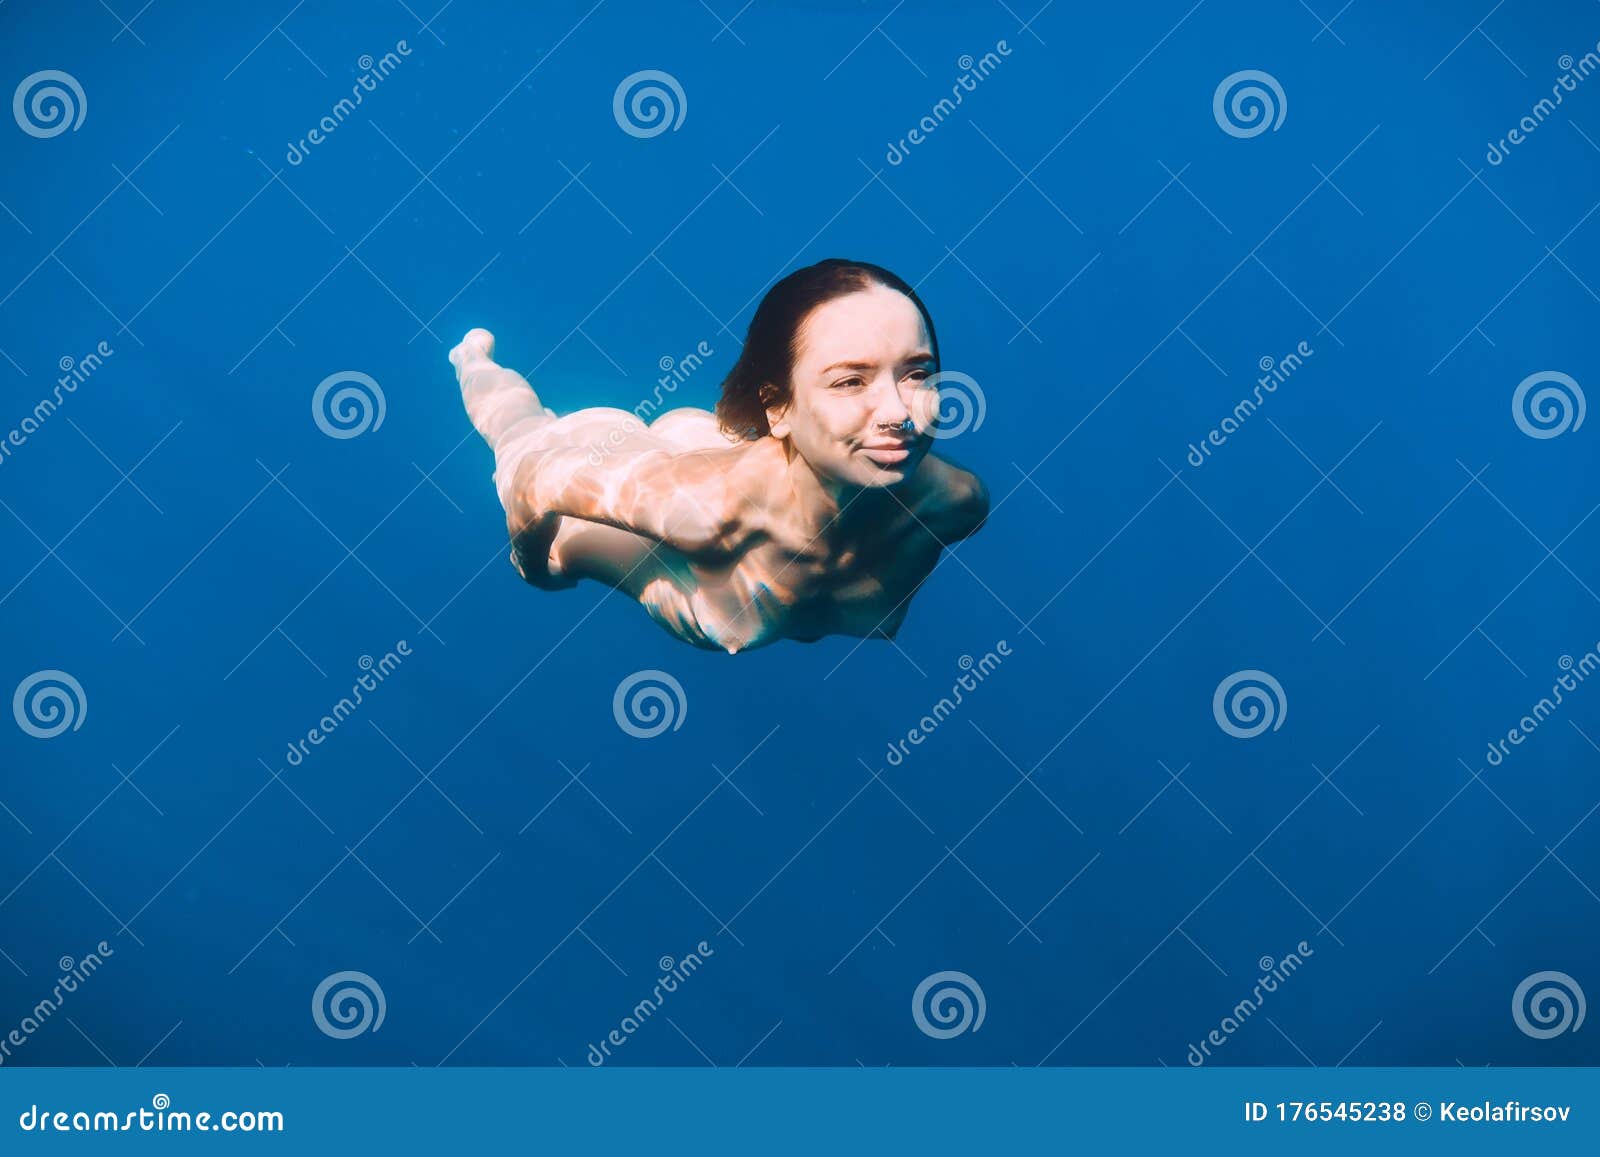 Swim Girl Nude